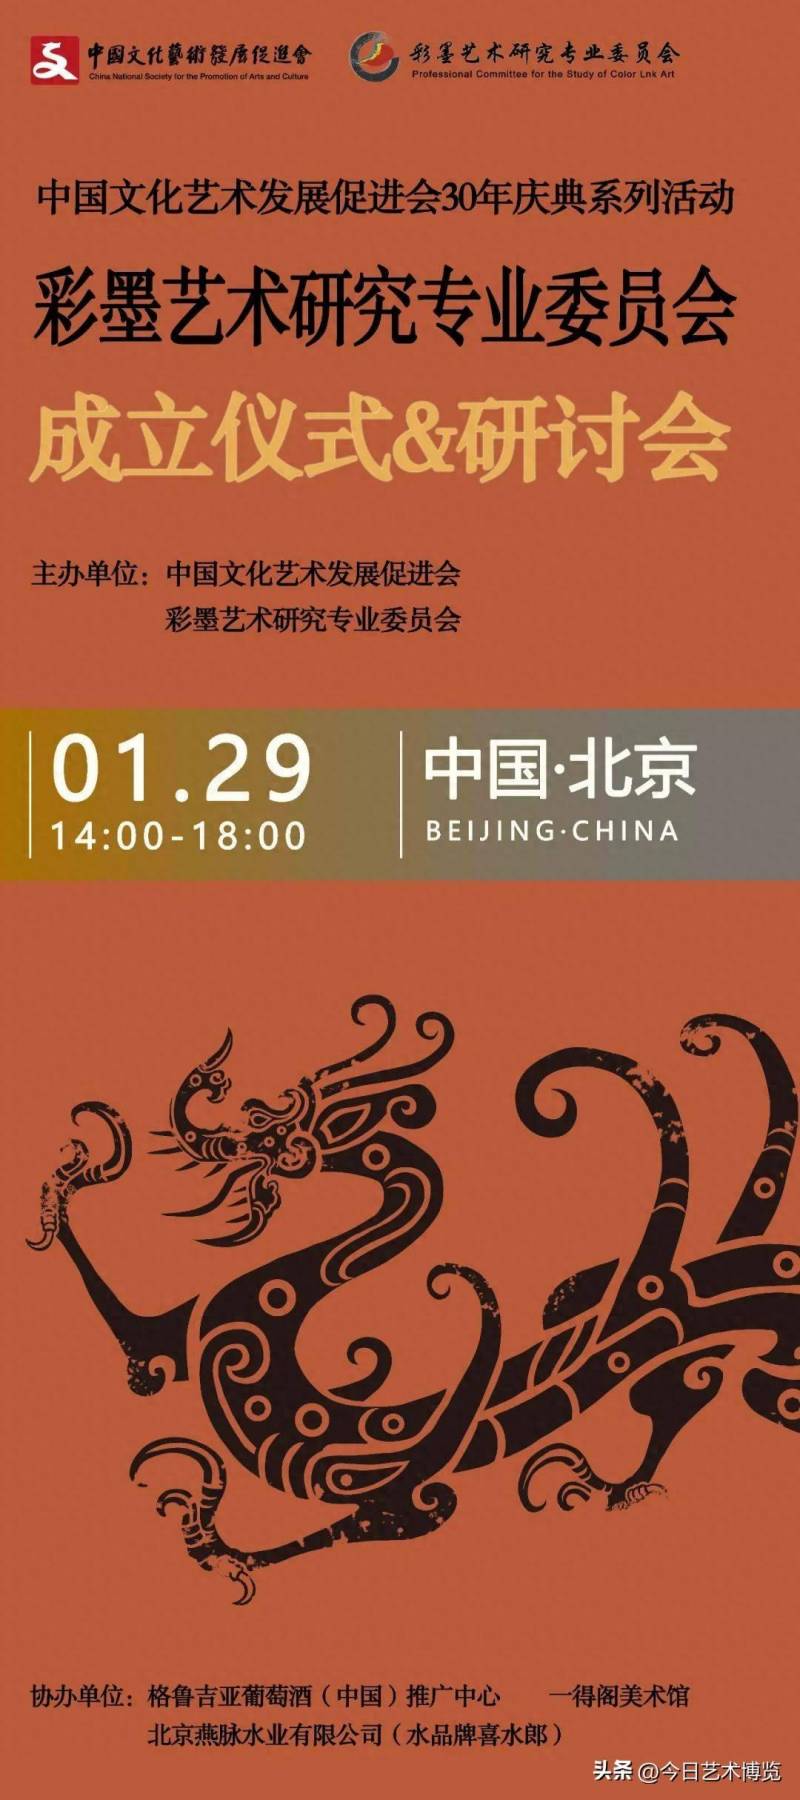 中国文促会彩墨艺术研究专业委员会正式成立 助力传统艺术创新发展